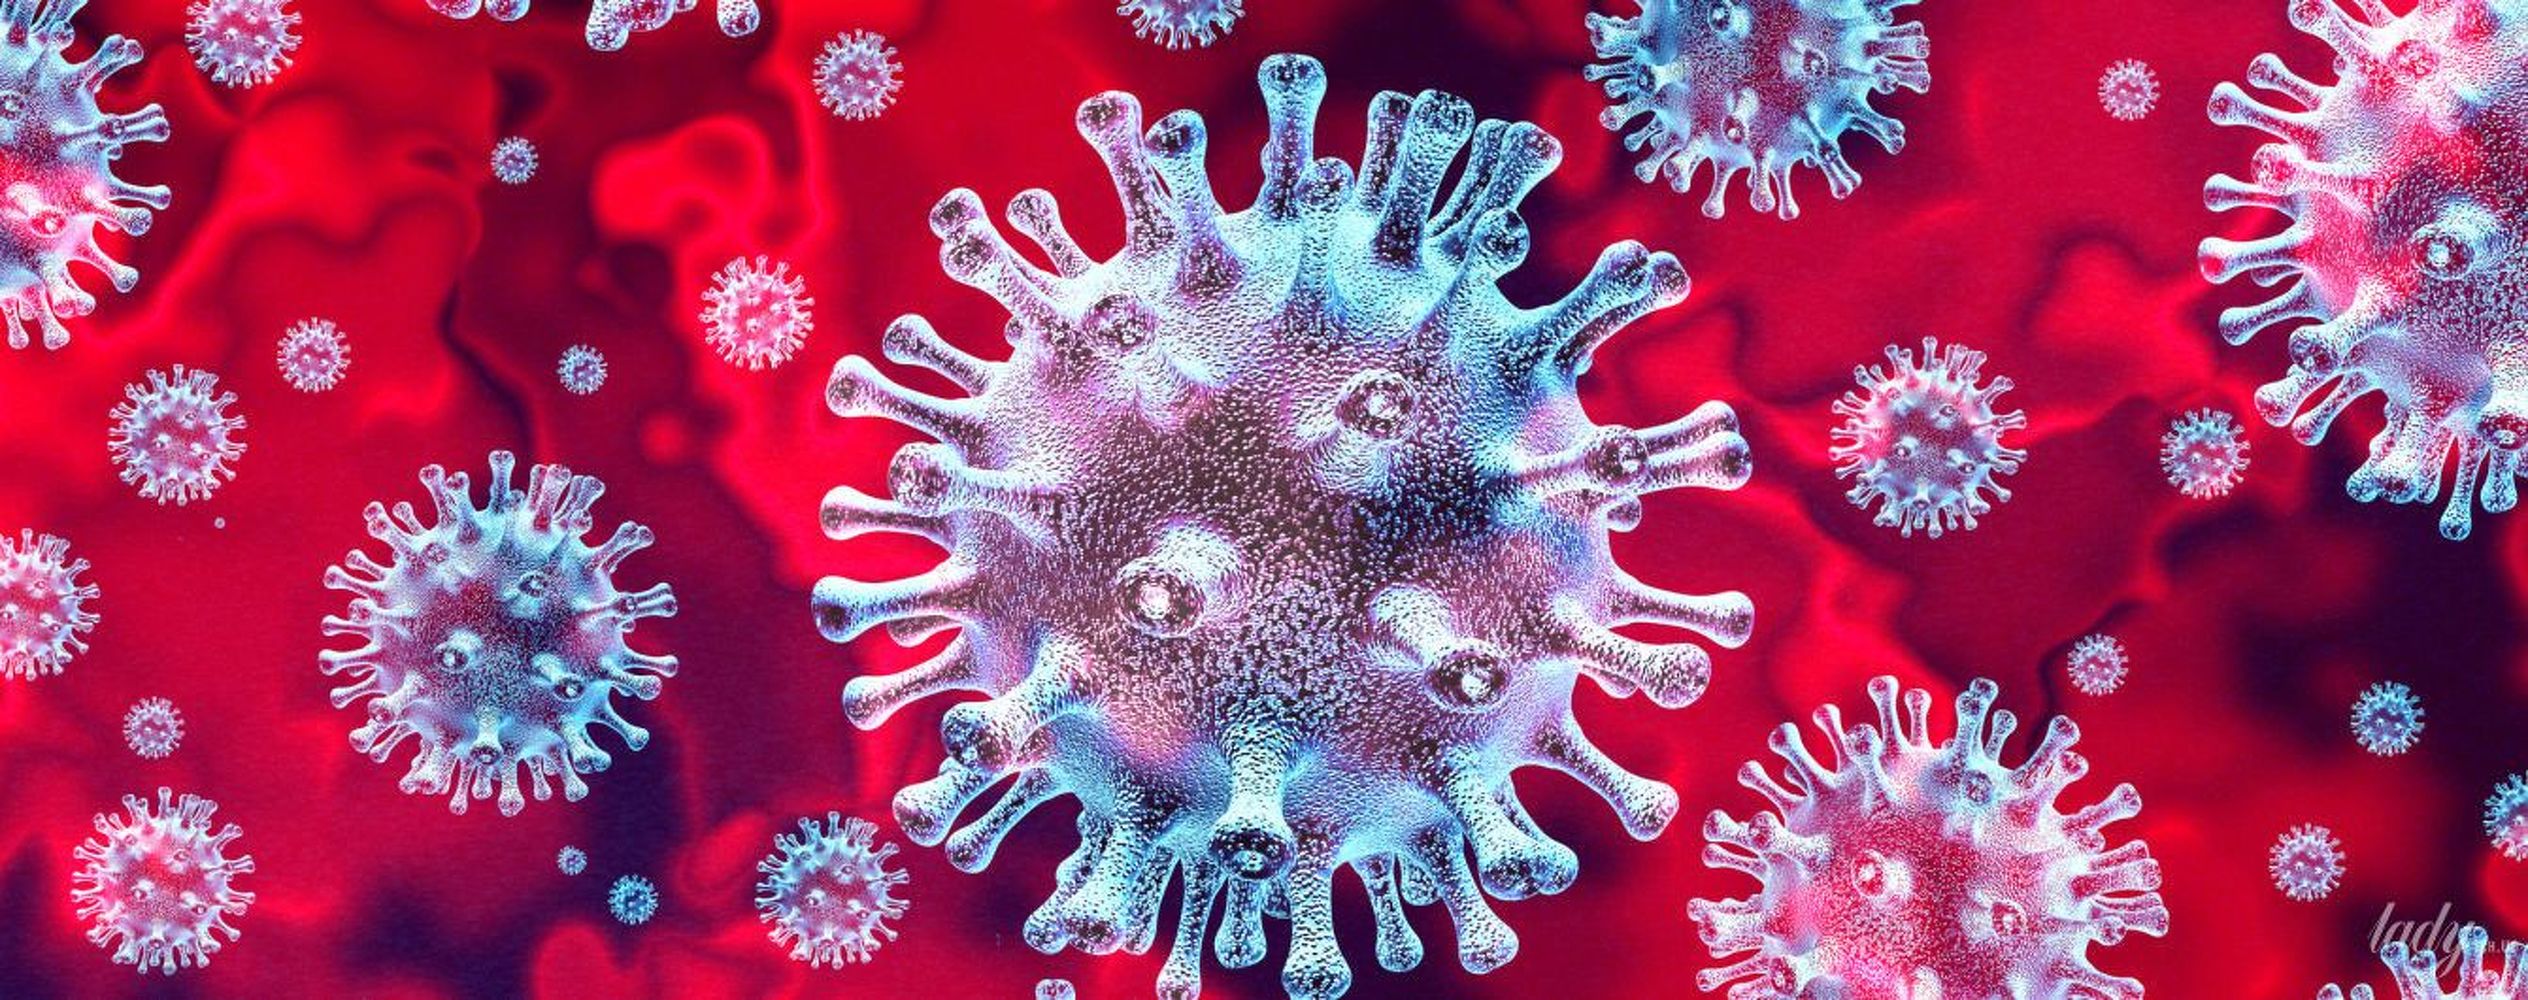 Китайский врач еще в декабре заметил коронавирус, его обязали молчать — Today.kg